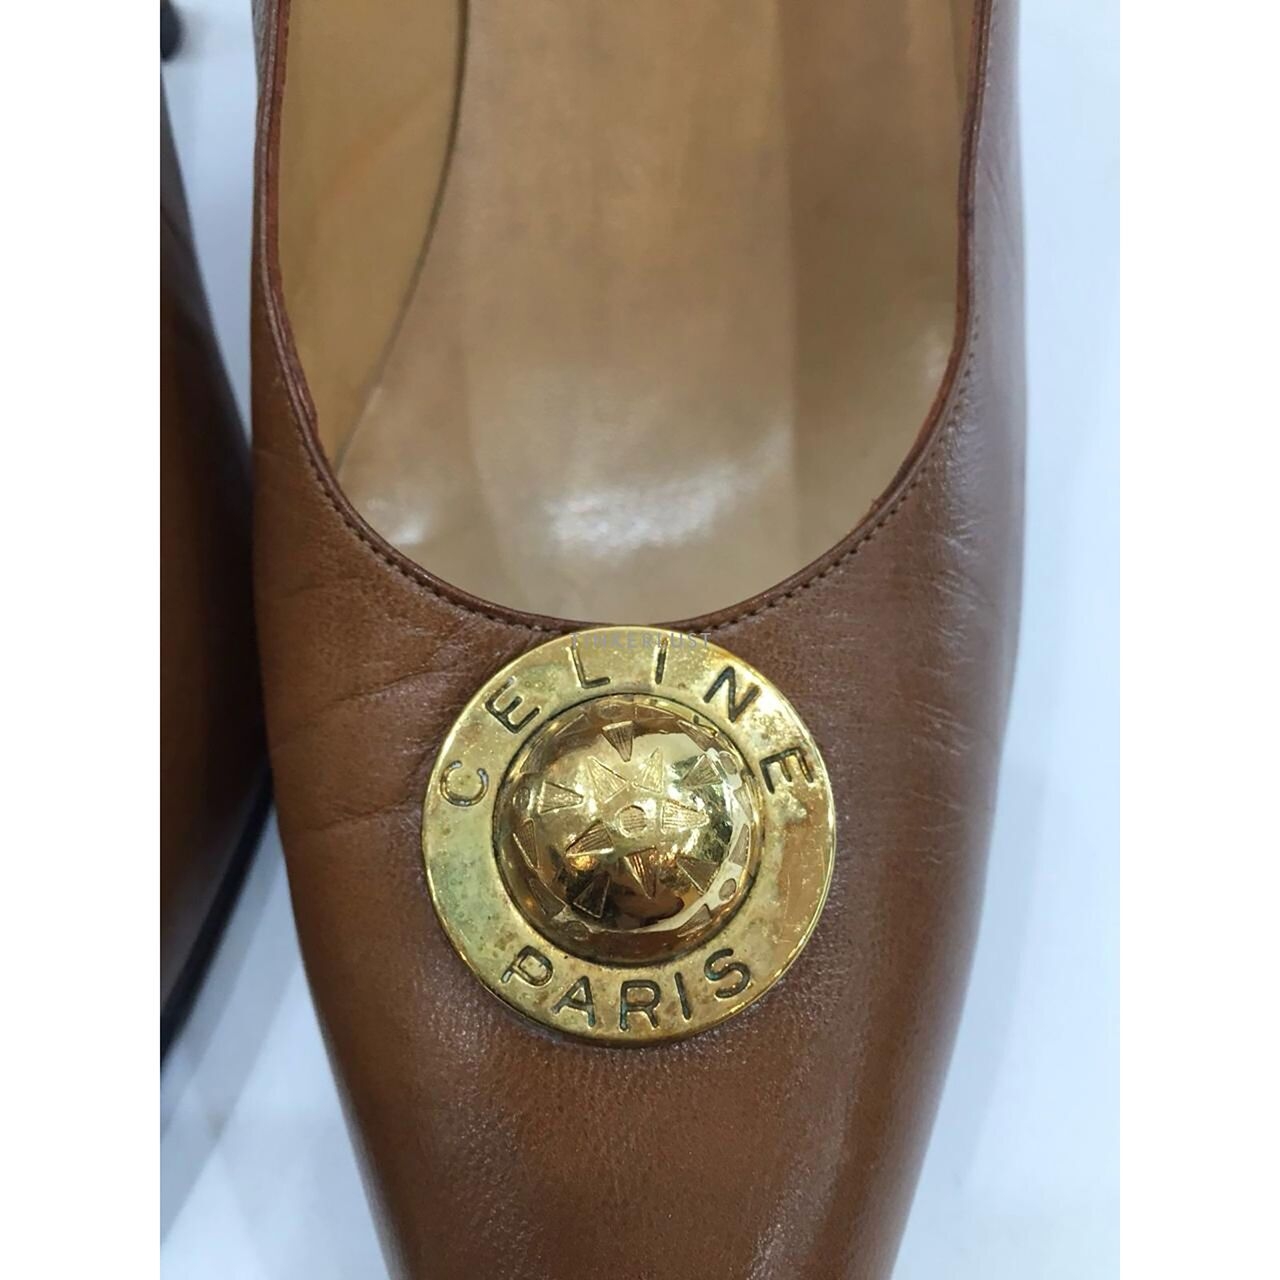 Celine Vintage Brown Tan Leather Shoes GHW Heels